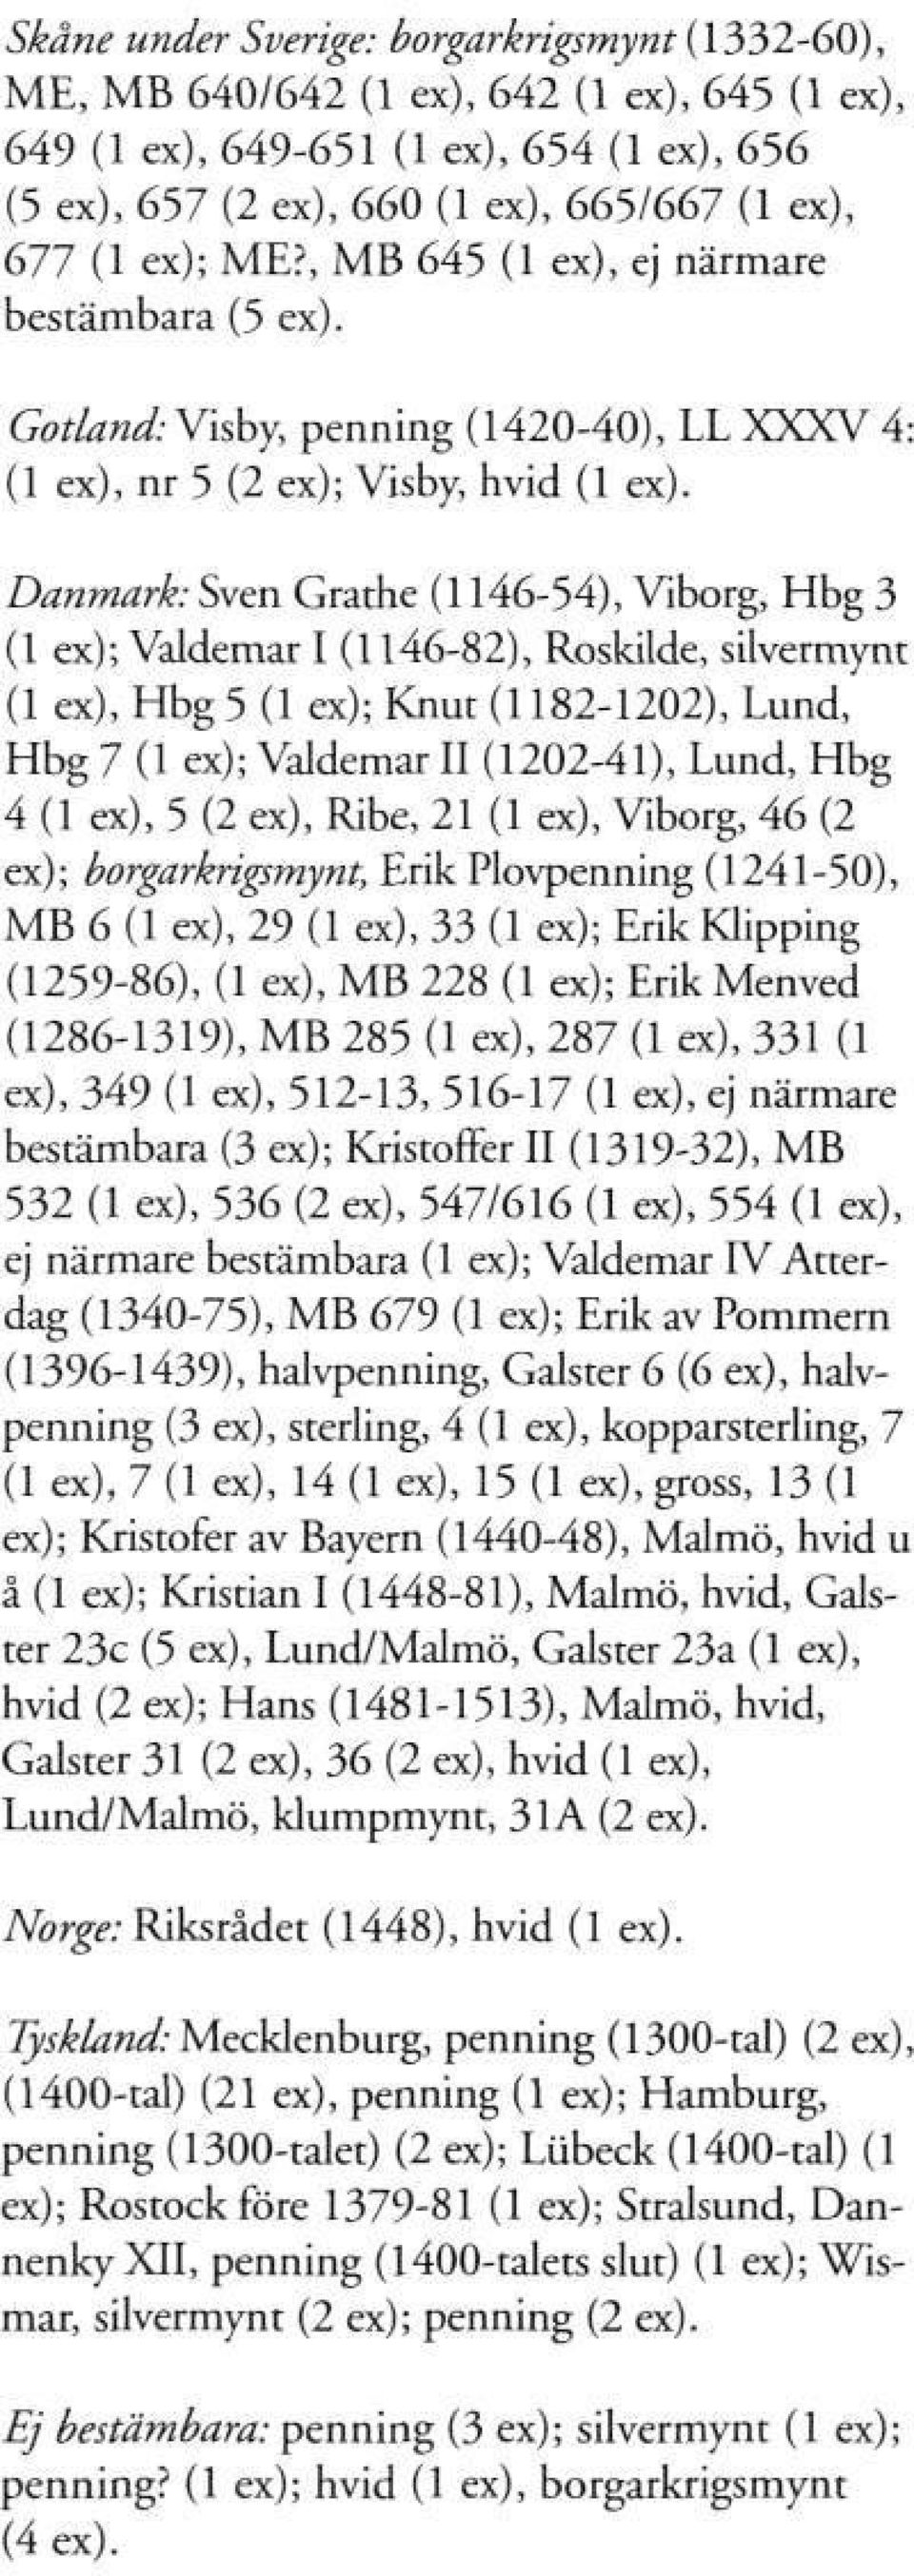 Danmark: Sven Grathe (1146-54), Viborg, Hbg 3 (1 ex); Valdemar I (1146-82), Roskilde, silvermynt (1 ex), Hbg 5 (1 ex); Knut (1182-1202), Lund, Hbg 7 (1 ex); Valdemar II (1202-41), Lund, Hbg 4 (1 ex),